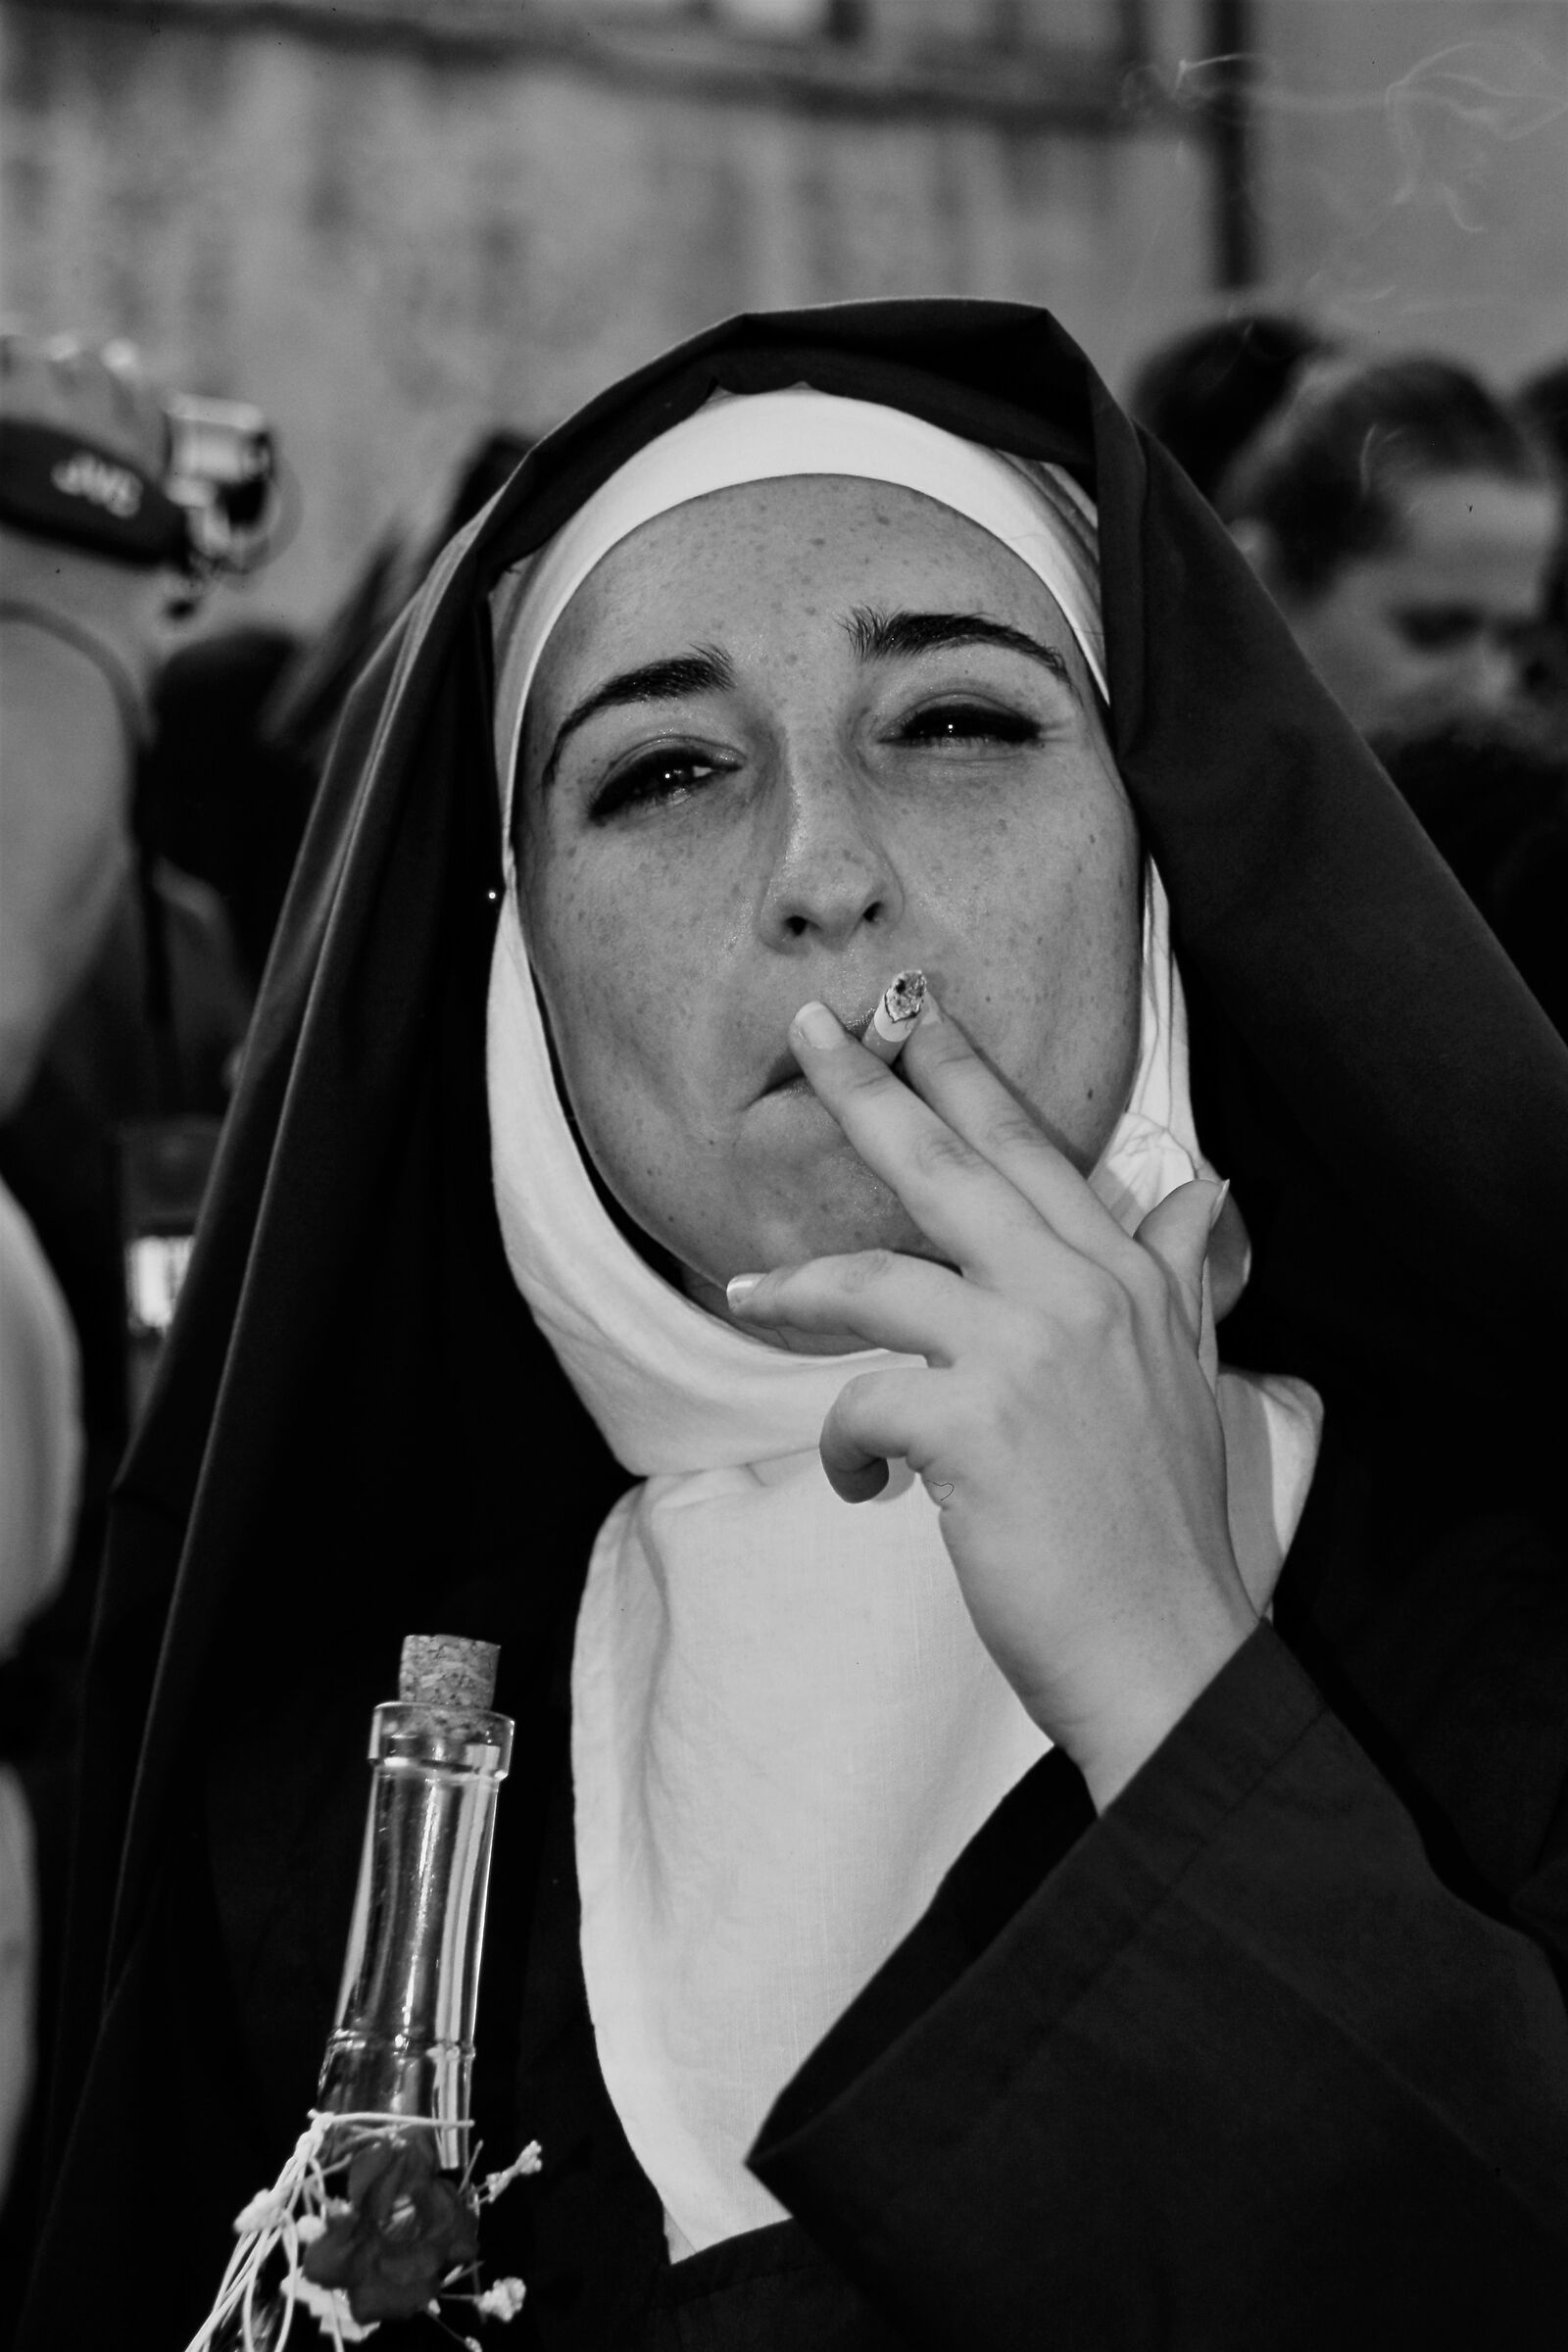 sister smoke...